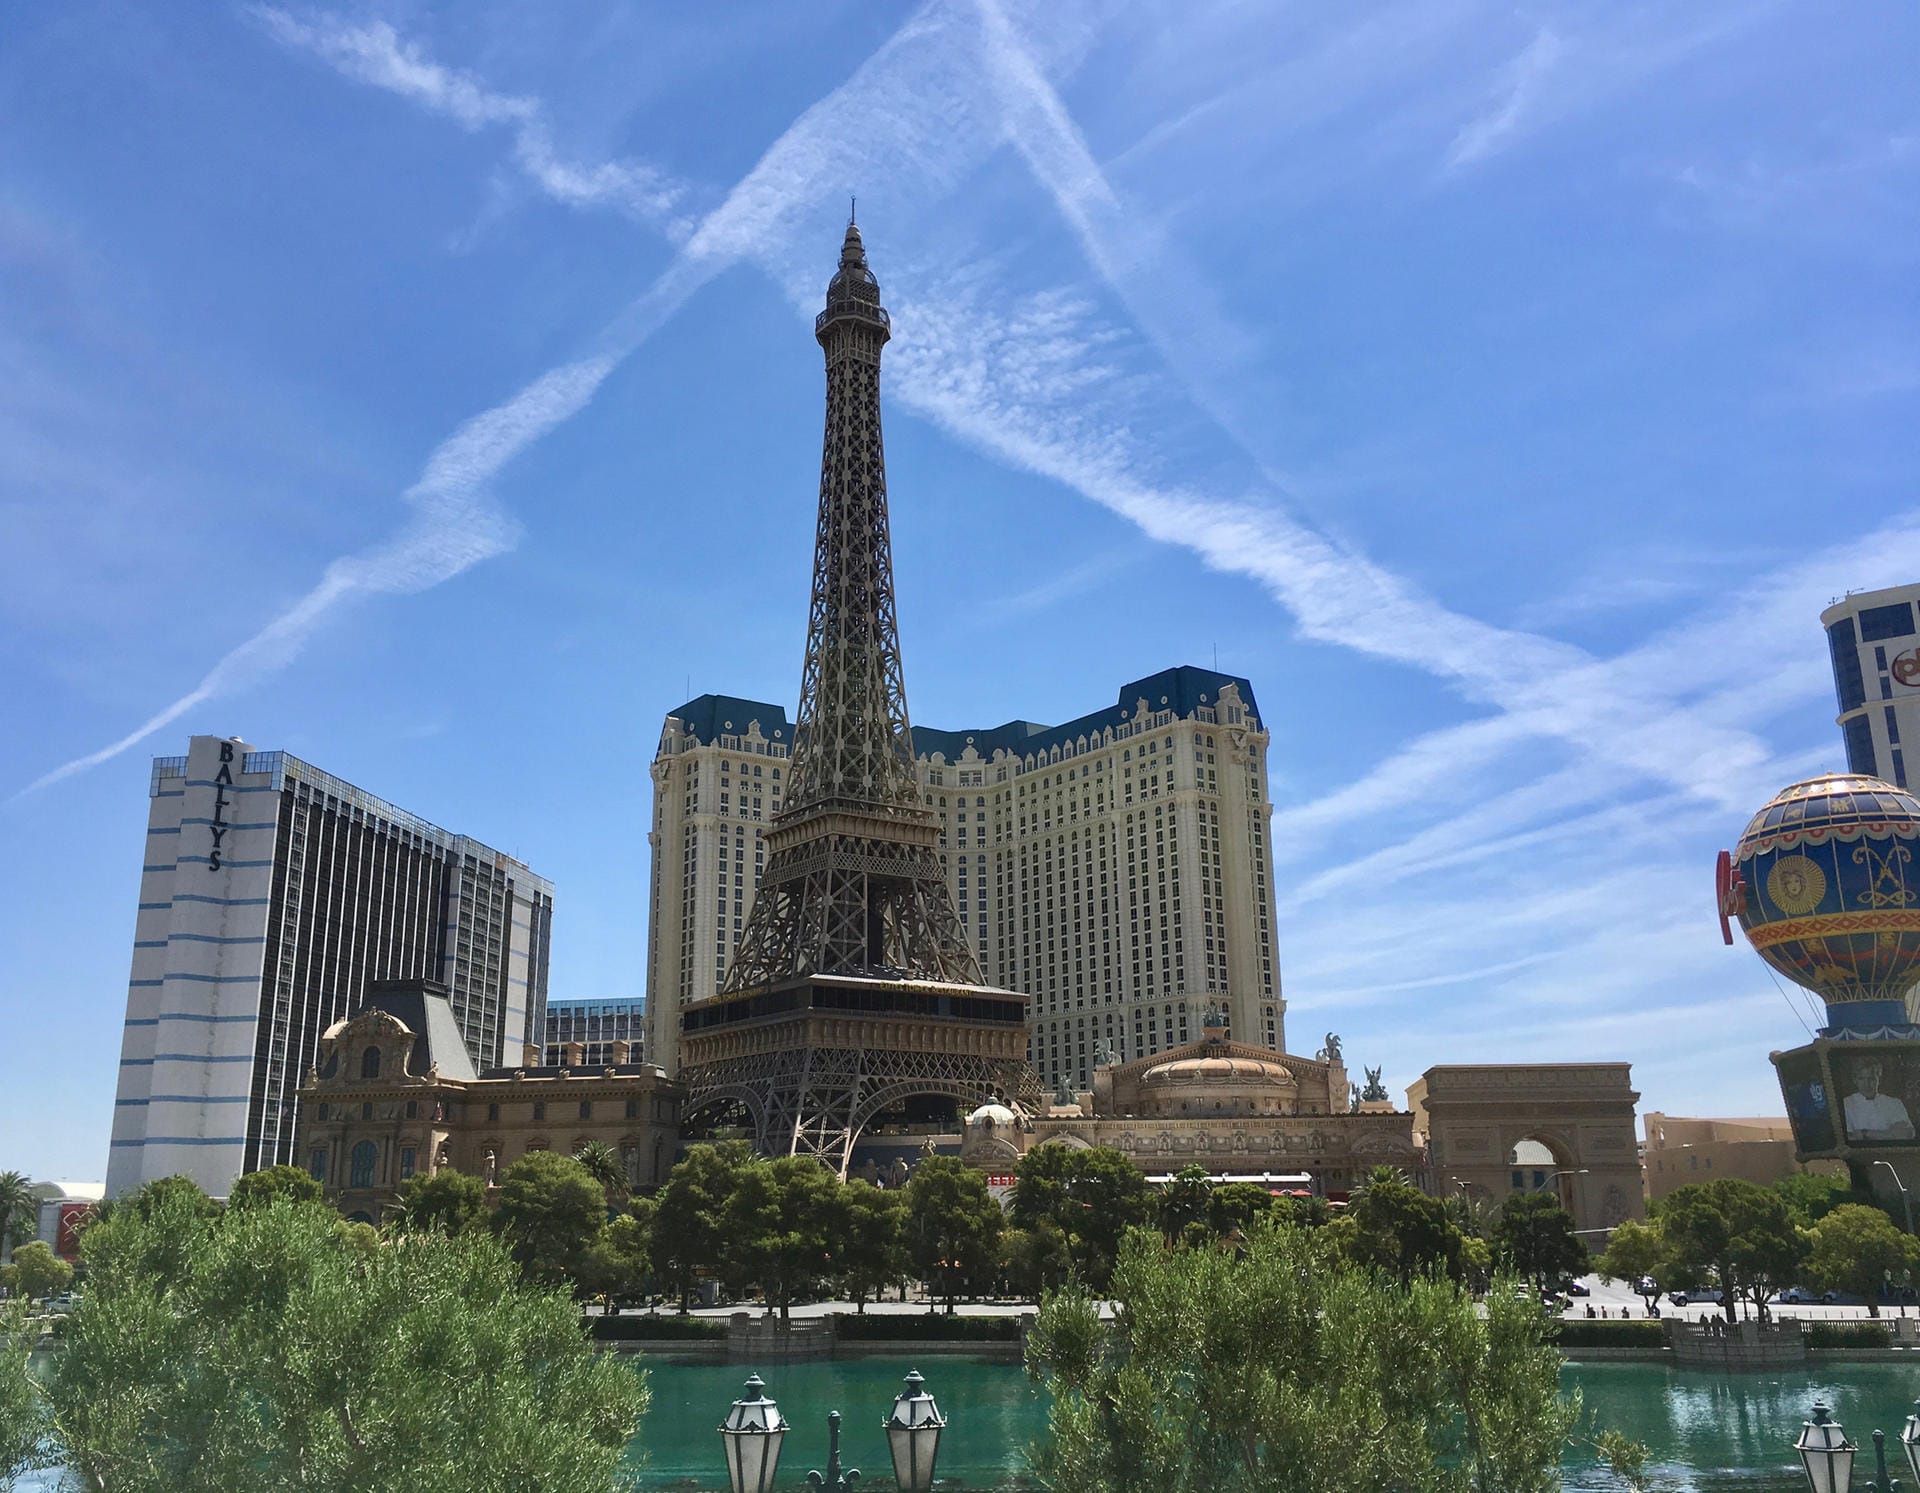 Kopie des Eiffelturms: In der Nähe des "Venetian Resort Hotel Casino" steht eine Kopie des Eiffelturms – mitten in Las Vegas.